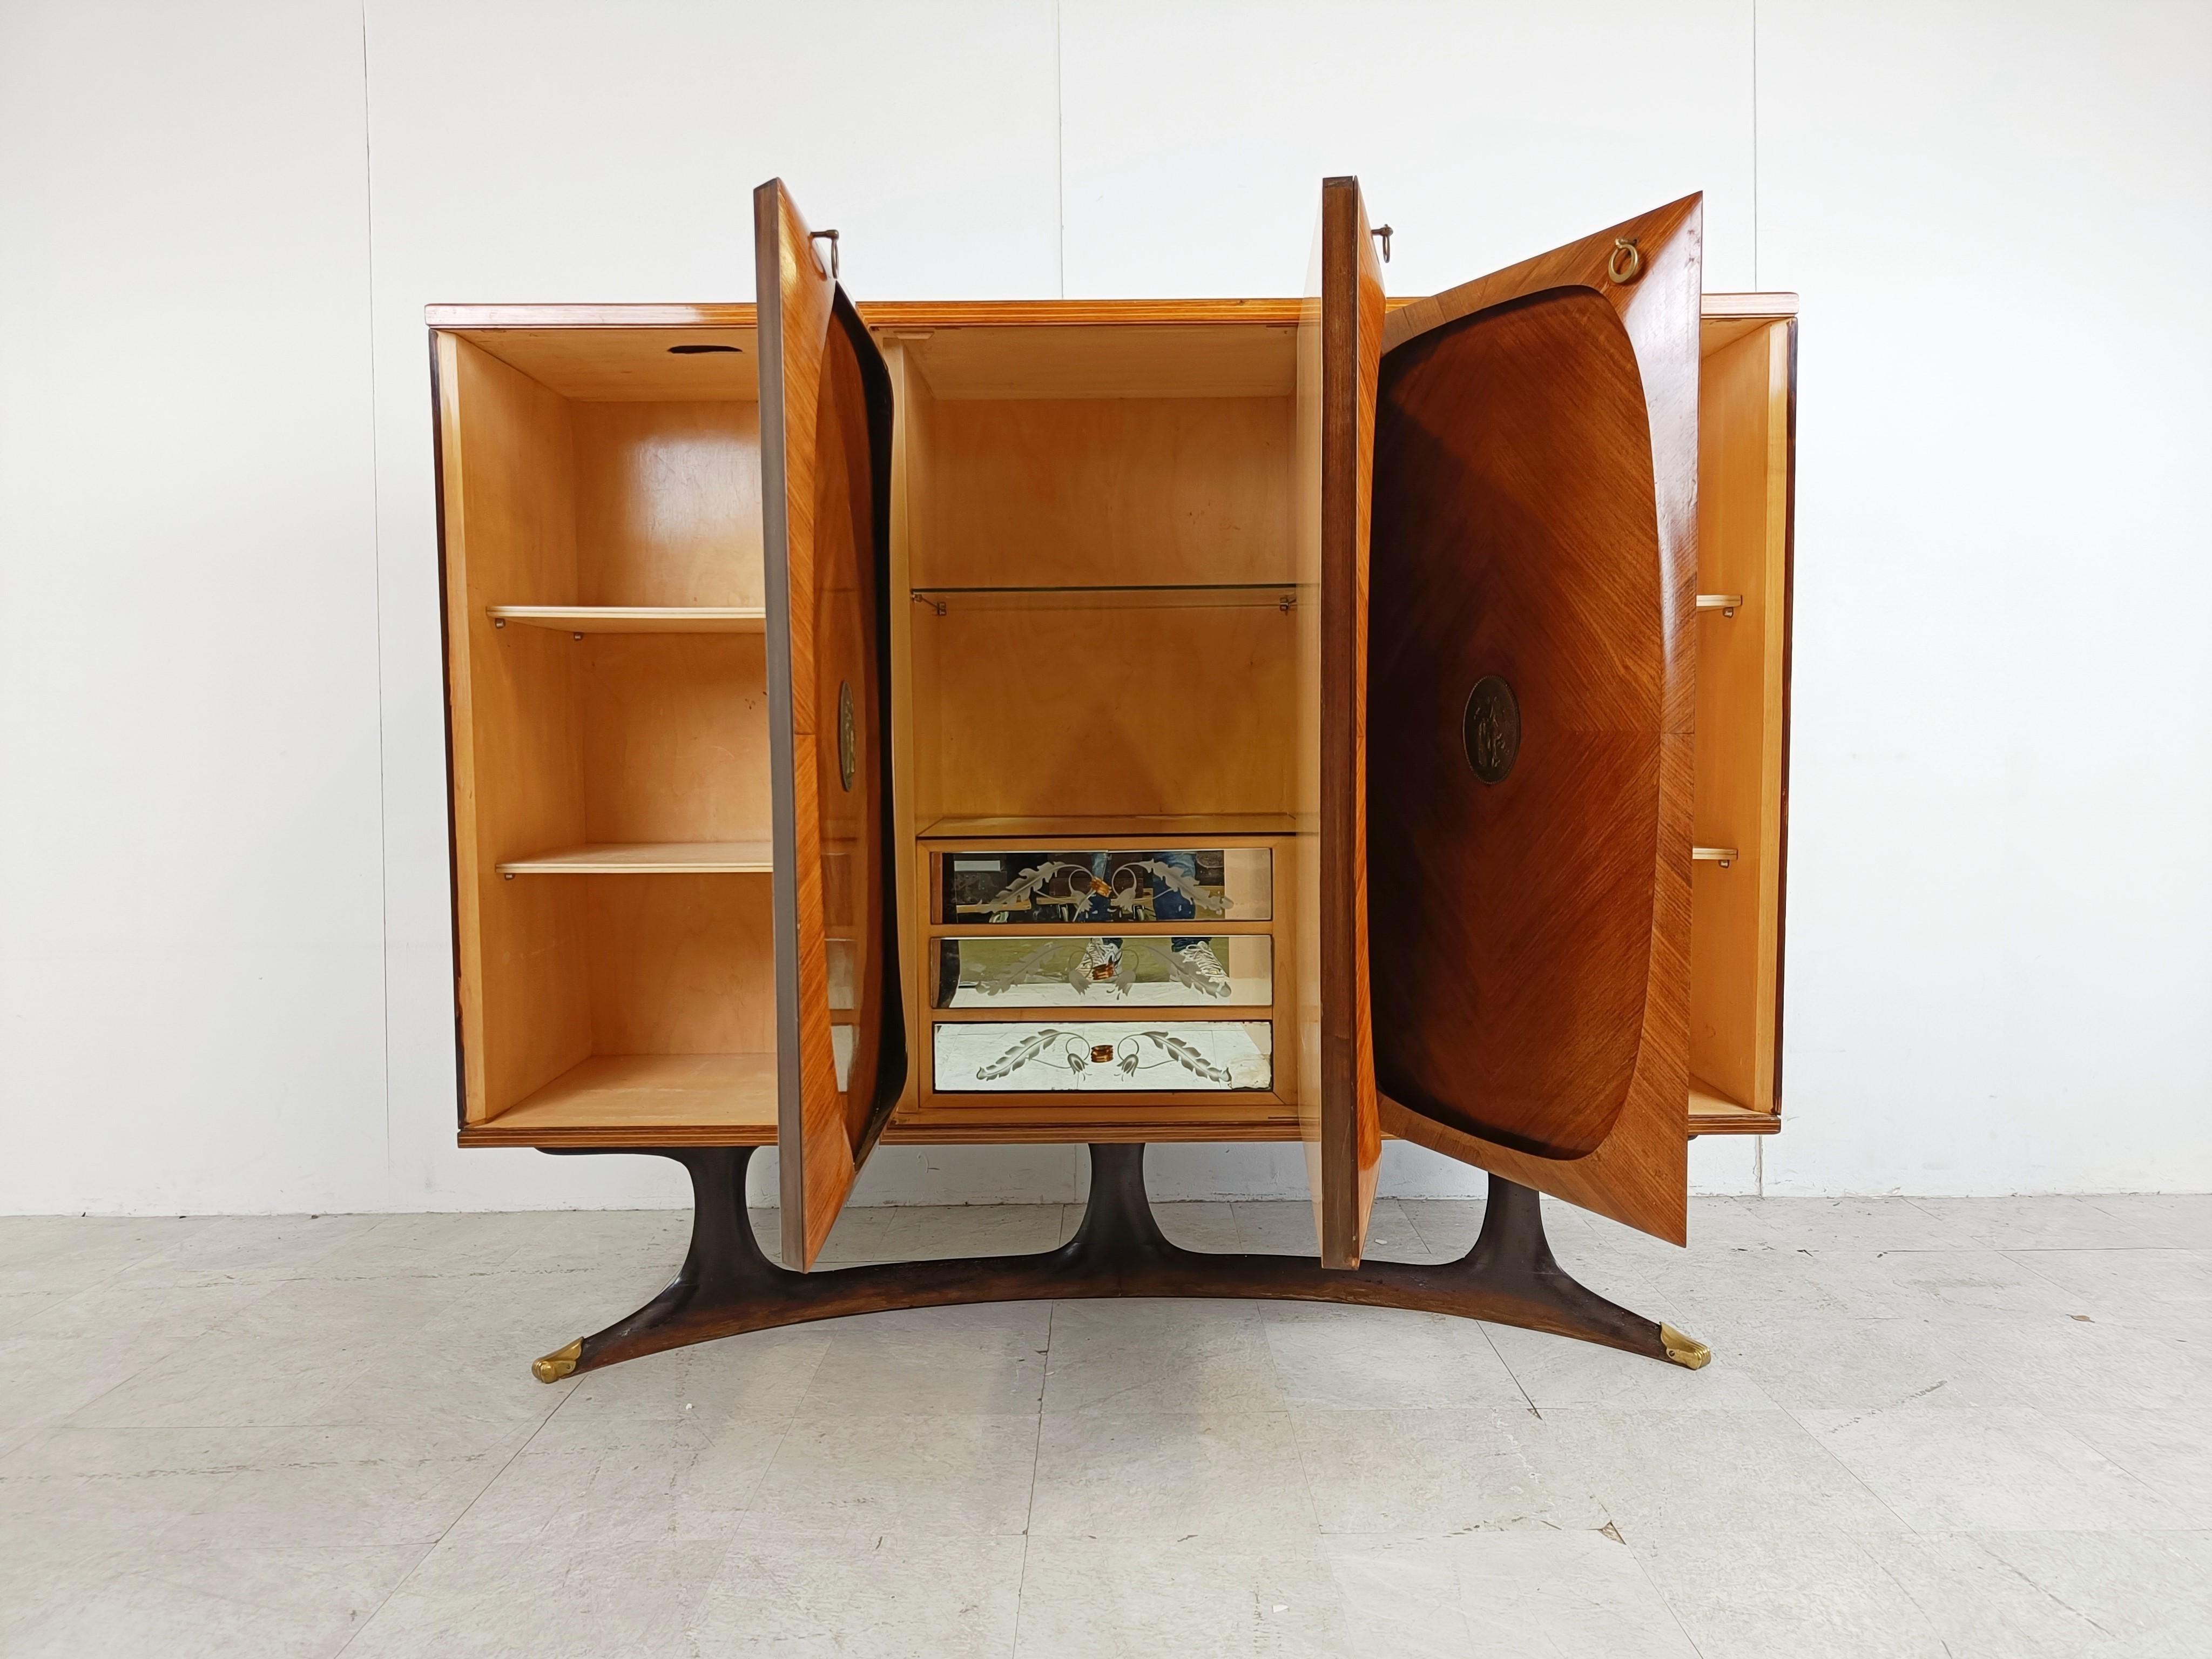 Très élégant meuble haut du milieu du siècle dernier, conçu par Vittorio Dassi pour Lissone.

Ce meuble haut en bois de rose est composé de trois portes, chacune décorée d'un médaillon en laiton. 

Les portes sont magnifiquement conçues avec un bord